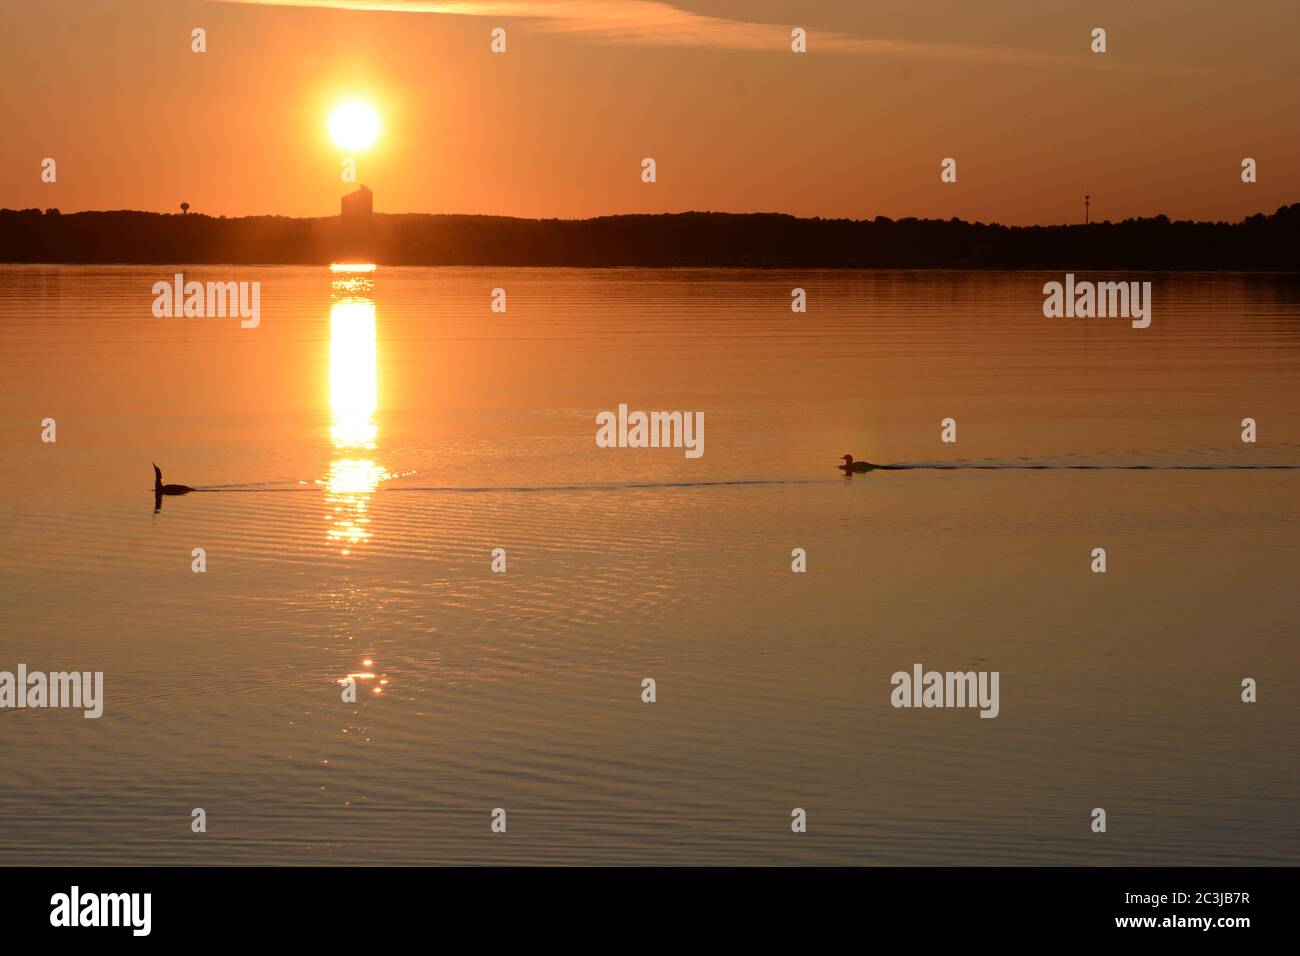 Sonnenaufgang in Traverse City, Michigan, USA. Grand Traverse Bay. Goldener Sonnenaufgang mit Enten, die im Wasser schwimmen. Stockfoto